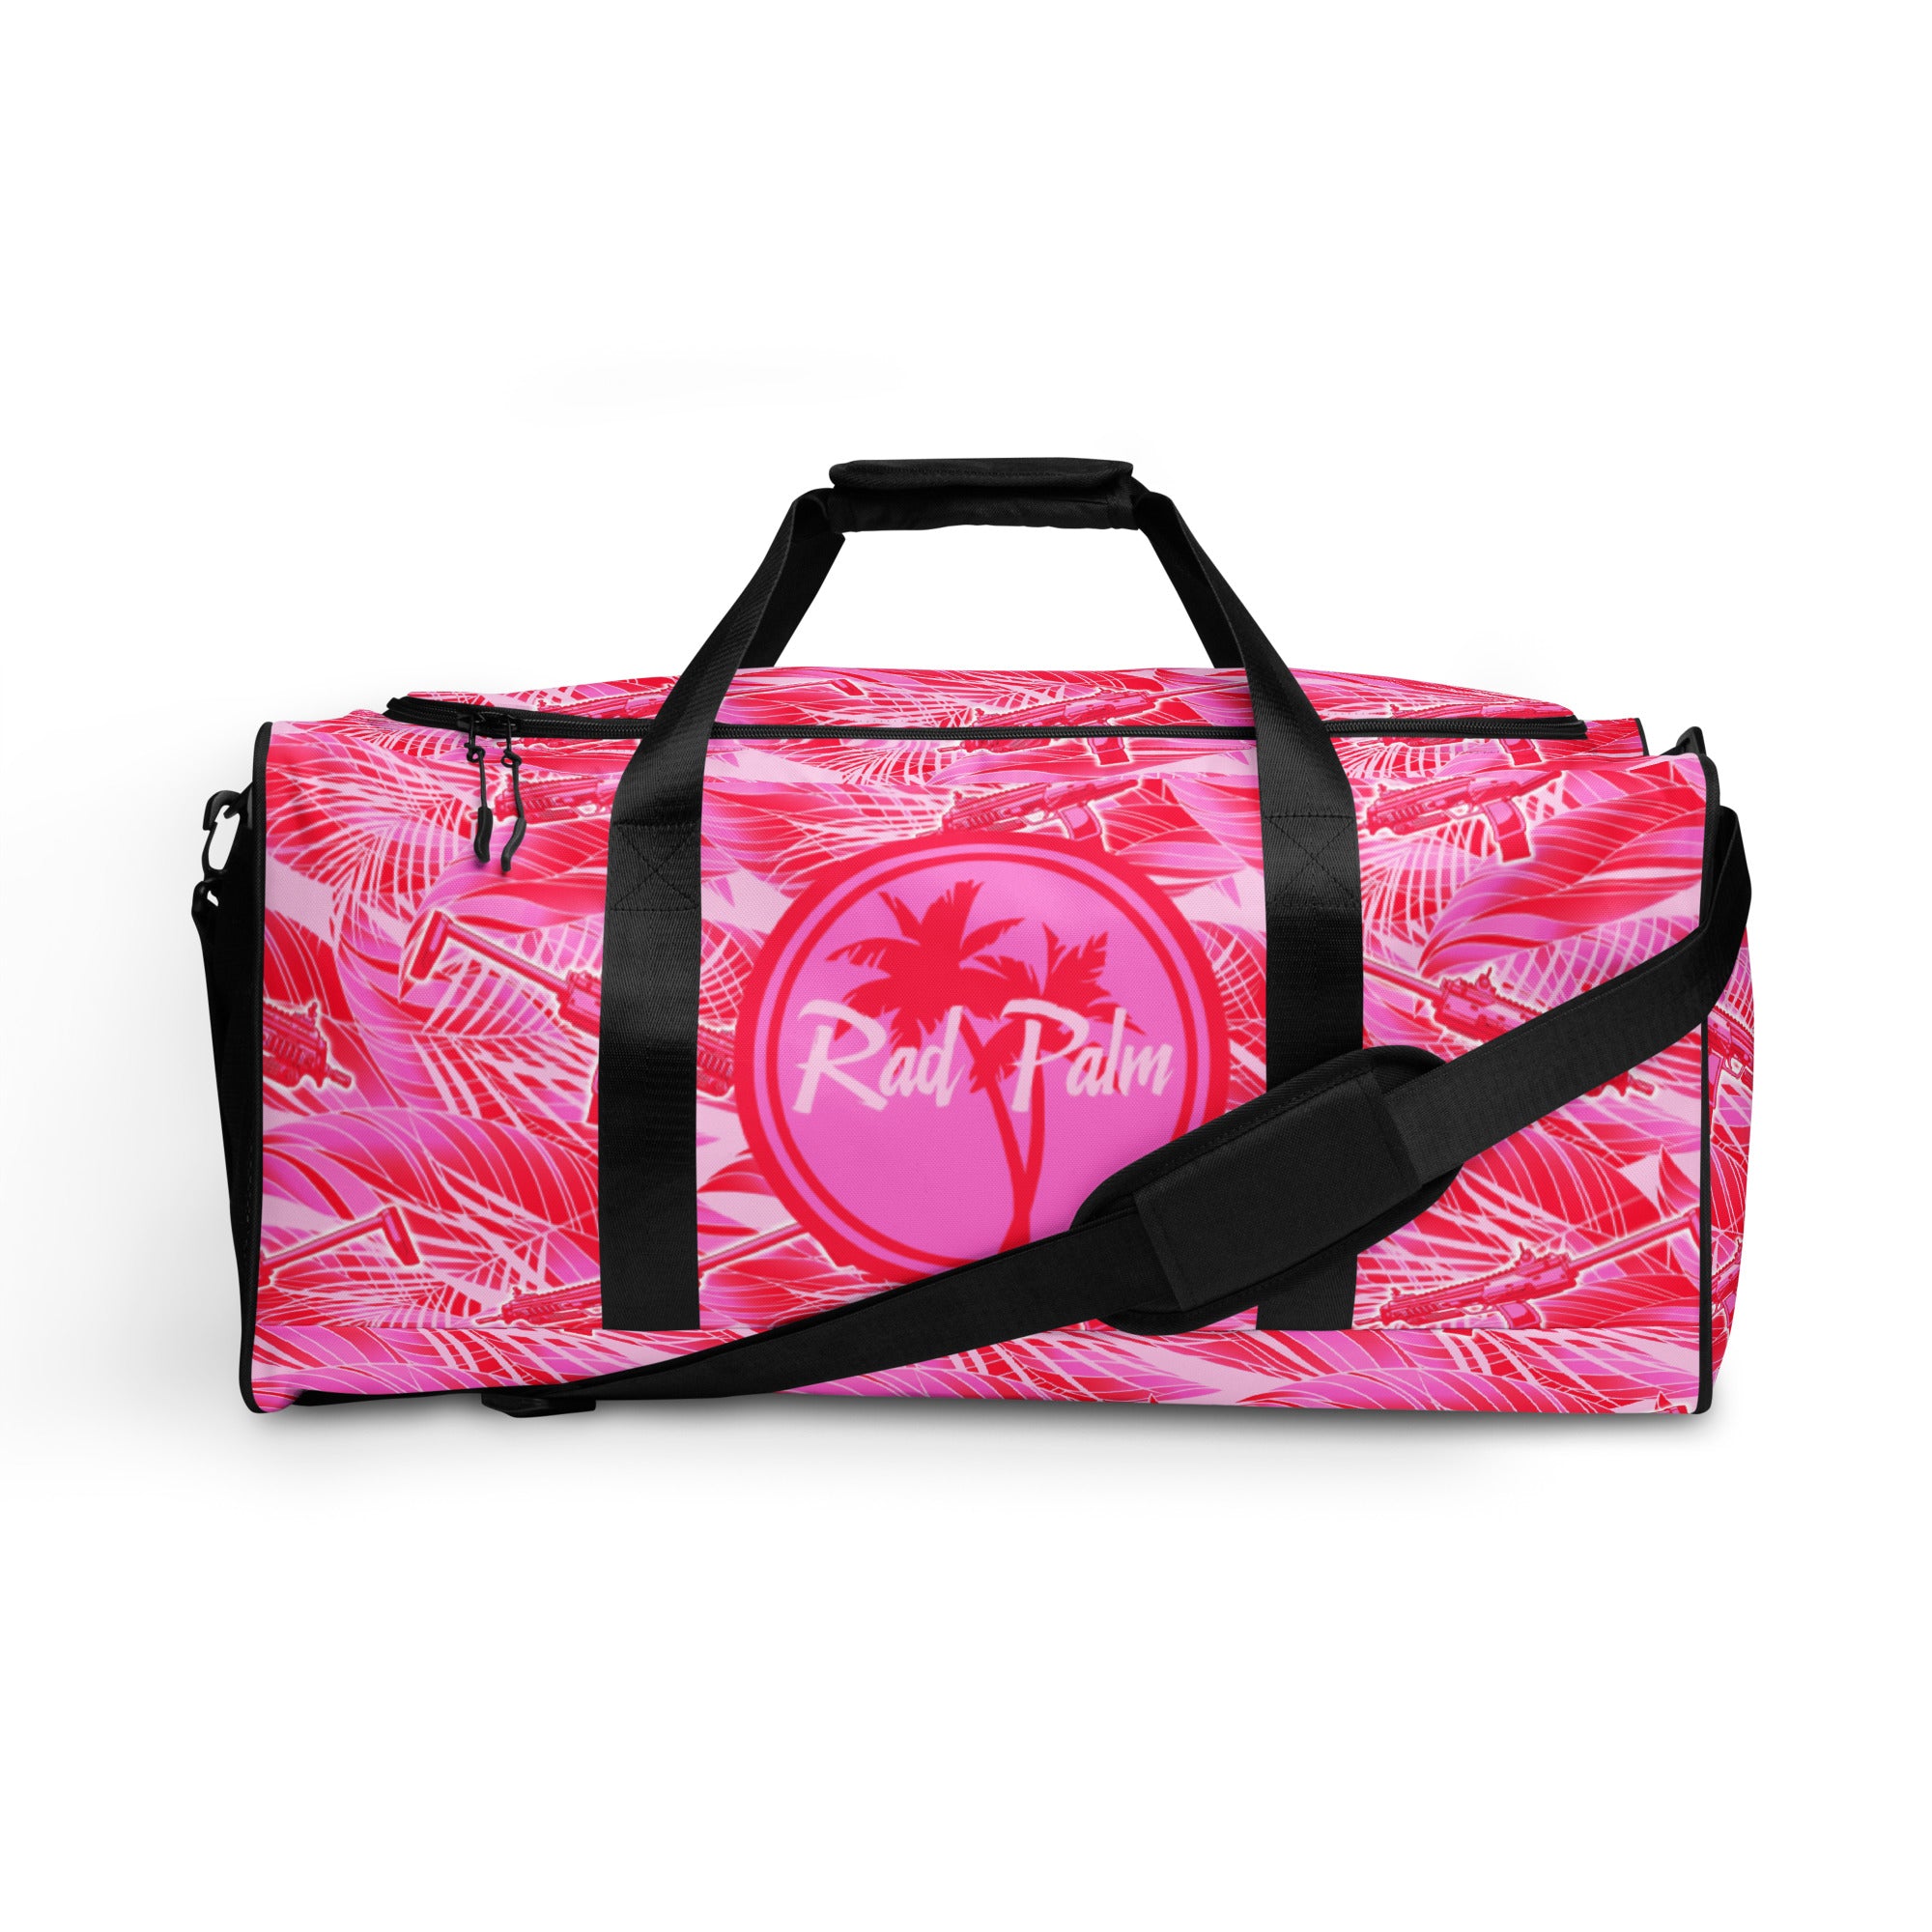 Rad Palm Tropic 7 Duffle Bag